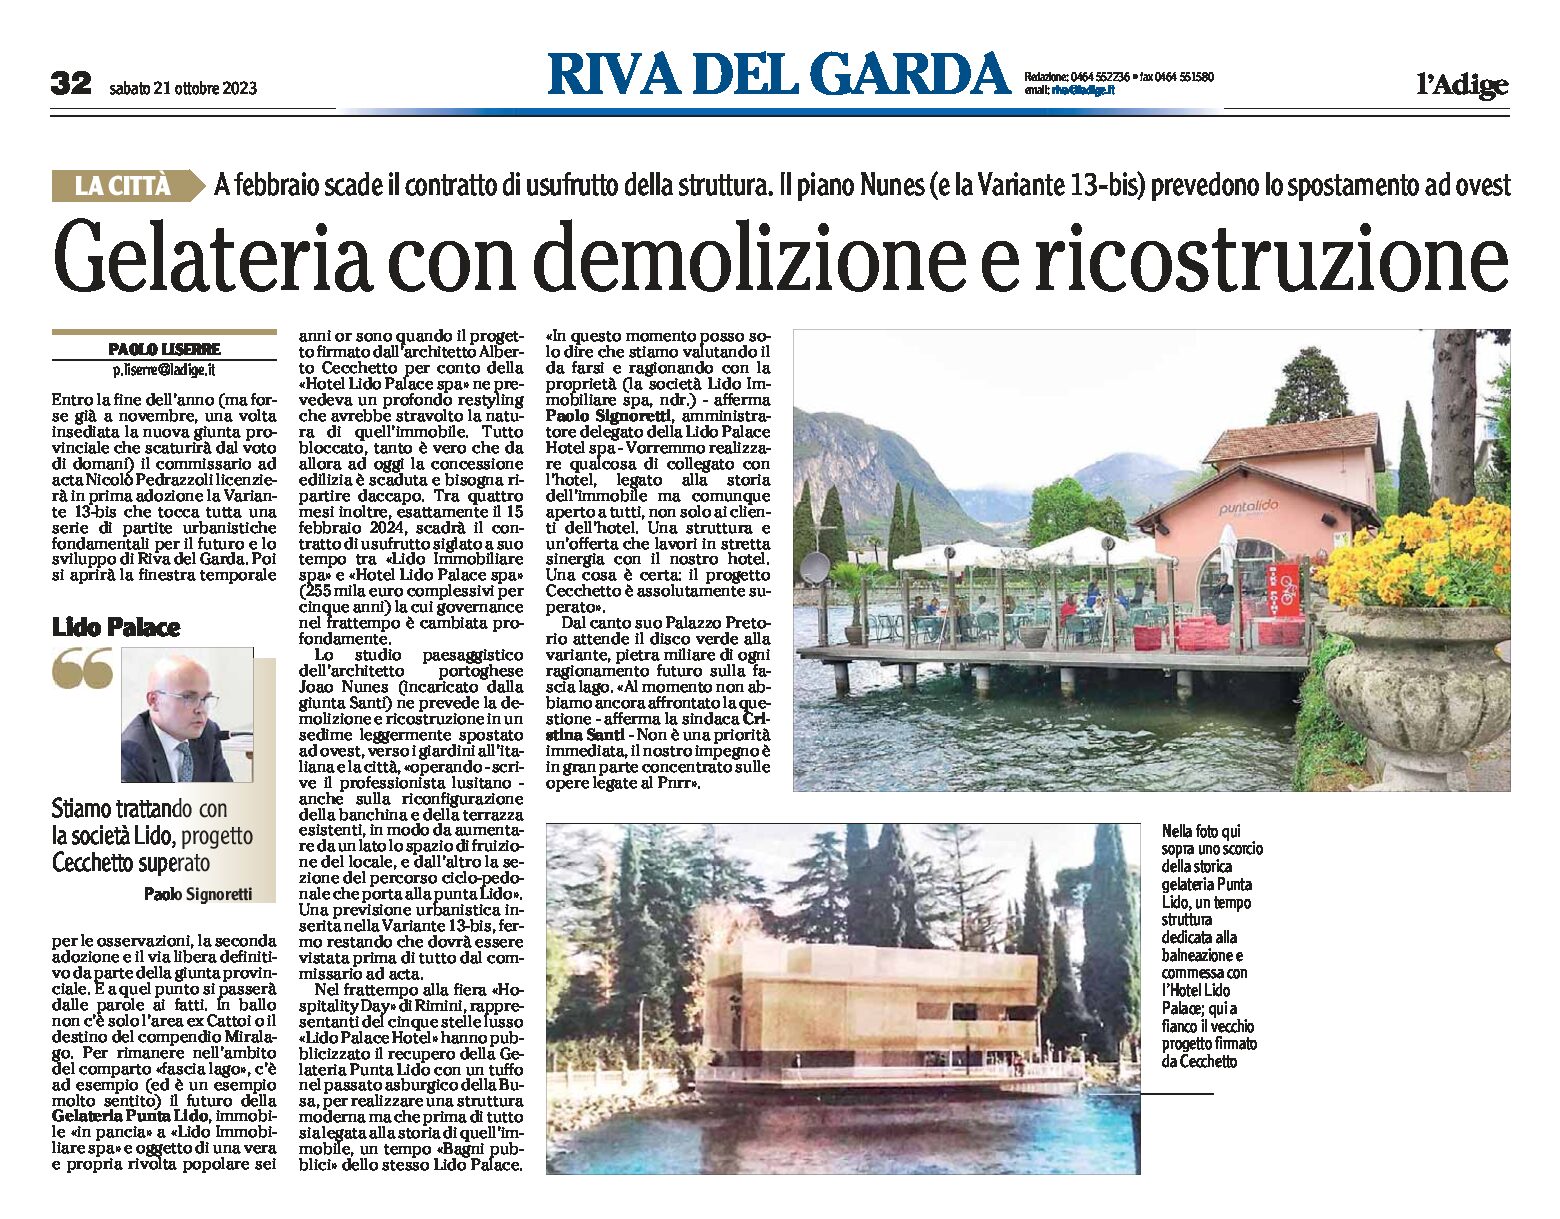 Riva: gelateria con demolizione e ricostruzione